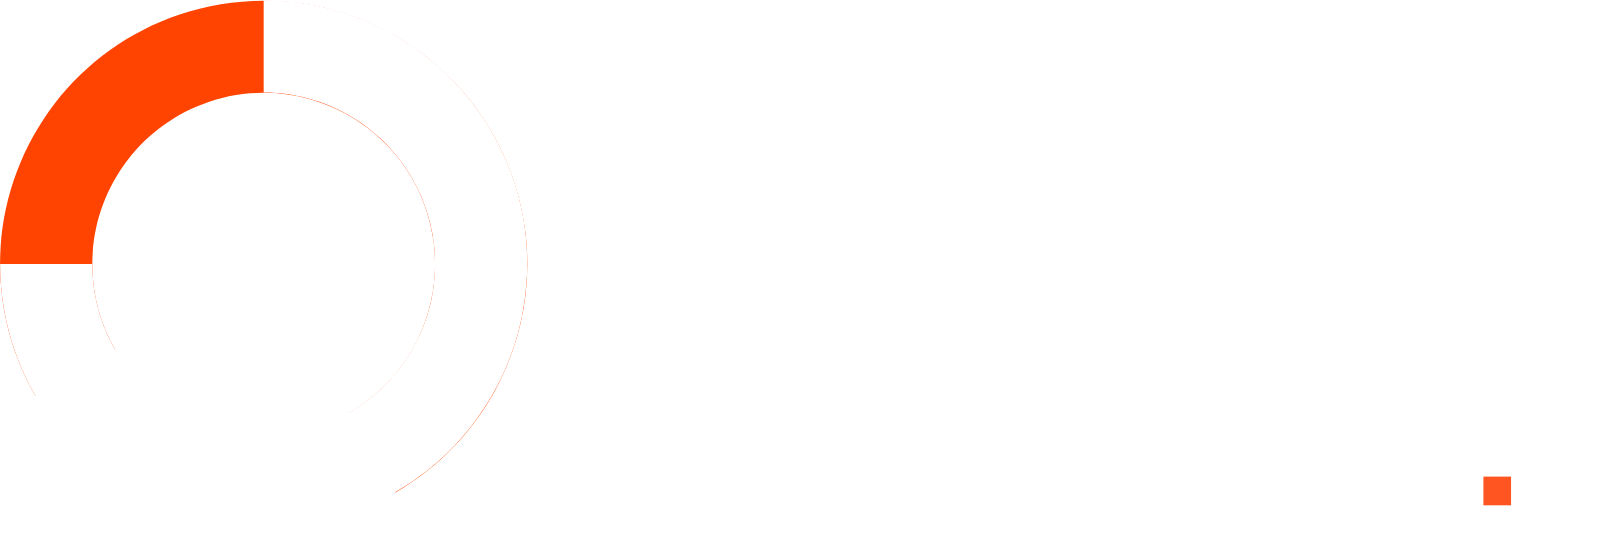 Advanced Health Intelligence logo large for dark backgrounds (transparent PNG)